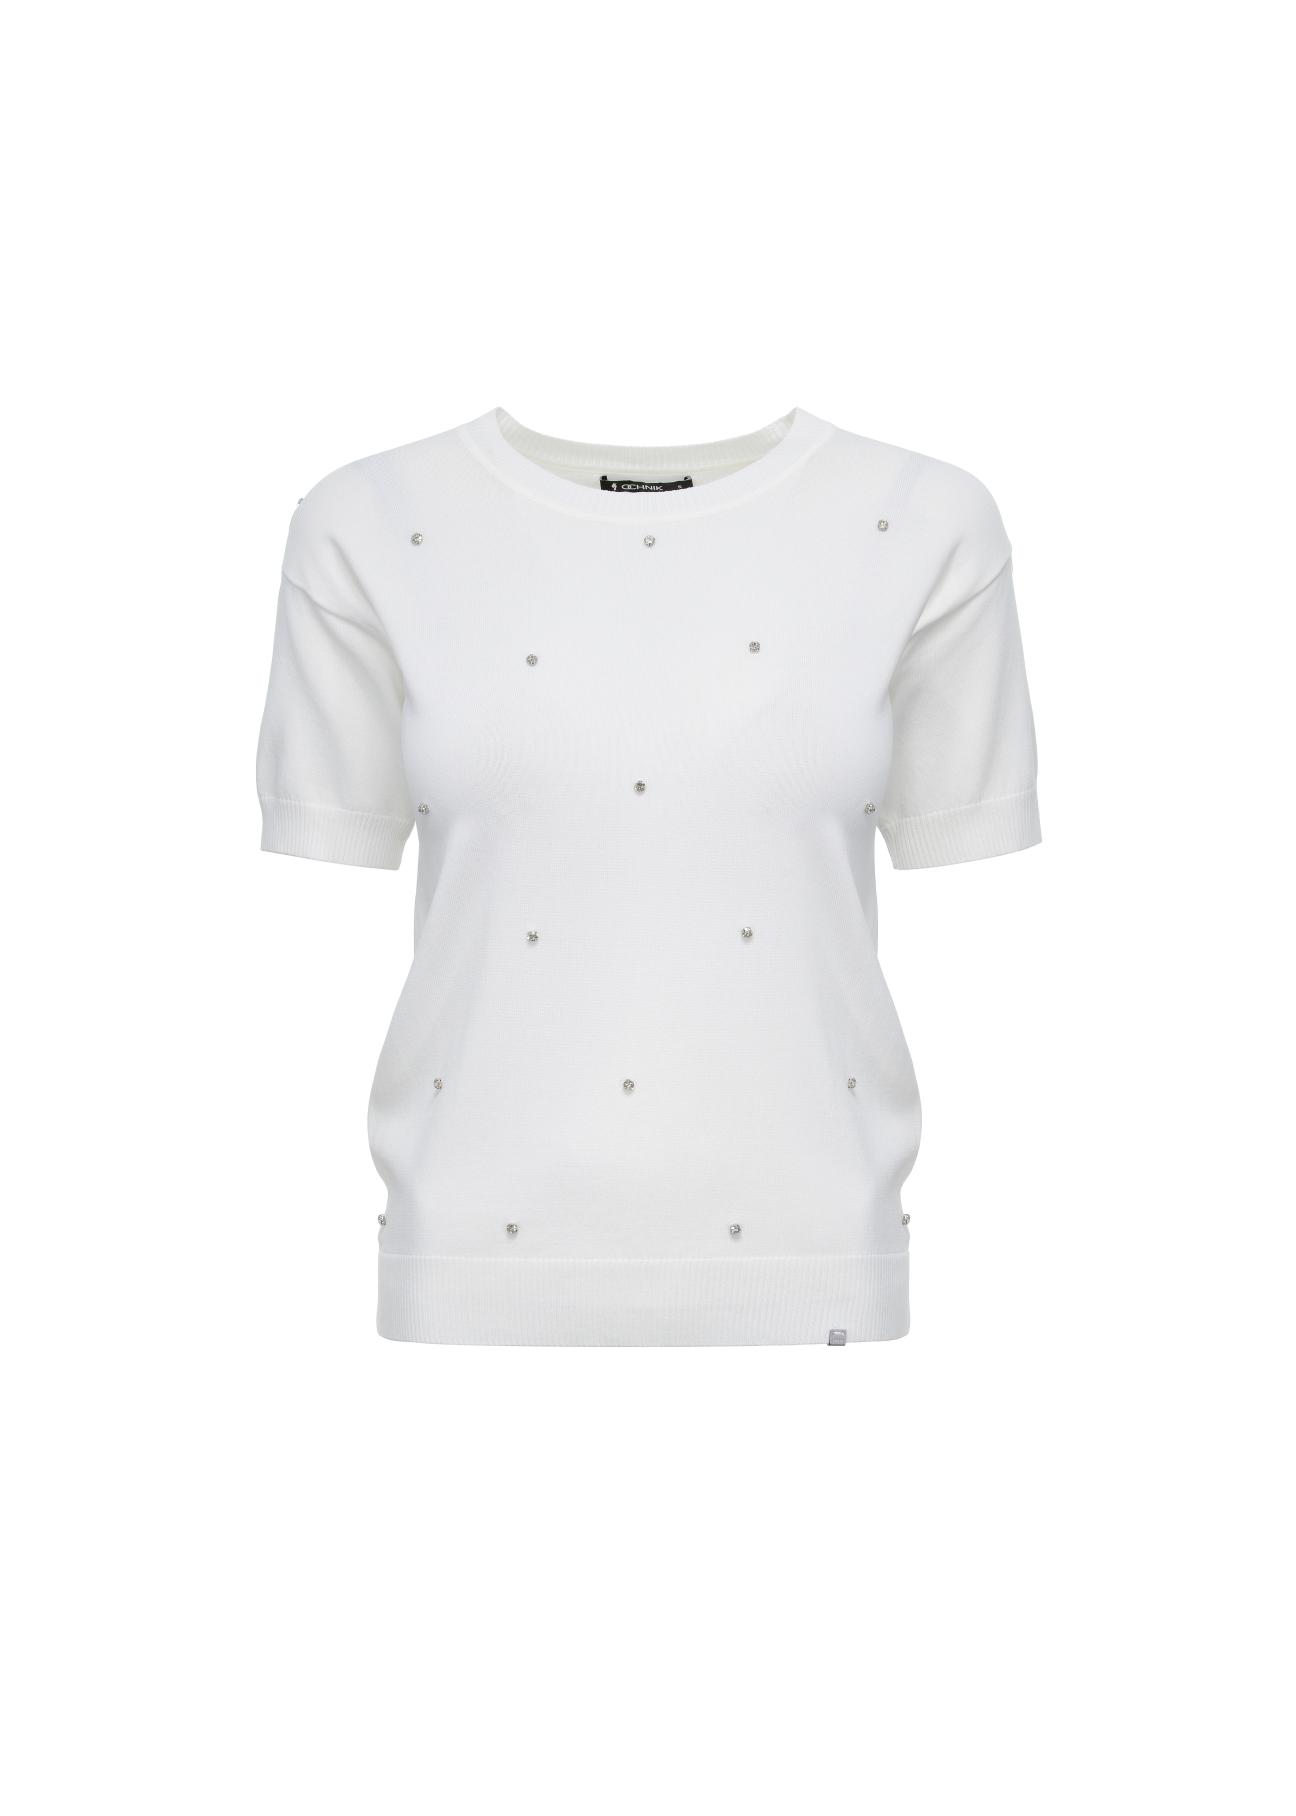 Biała bluzka damska z cekinami BLUDT-0150-11(W23)